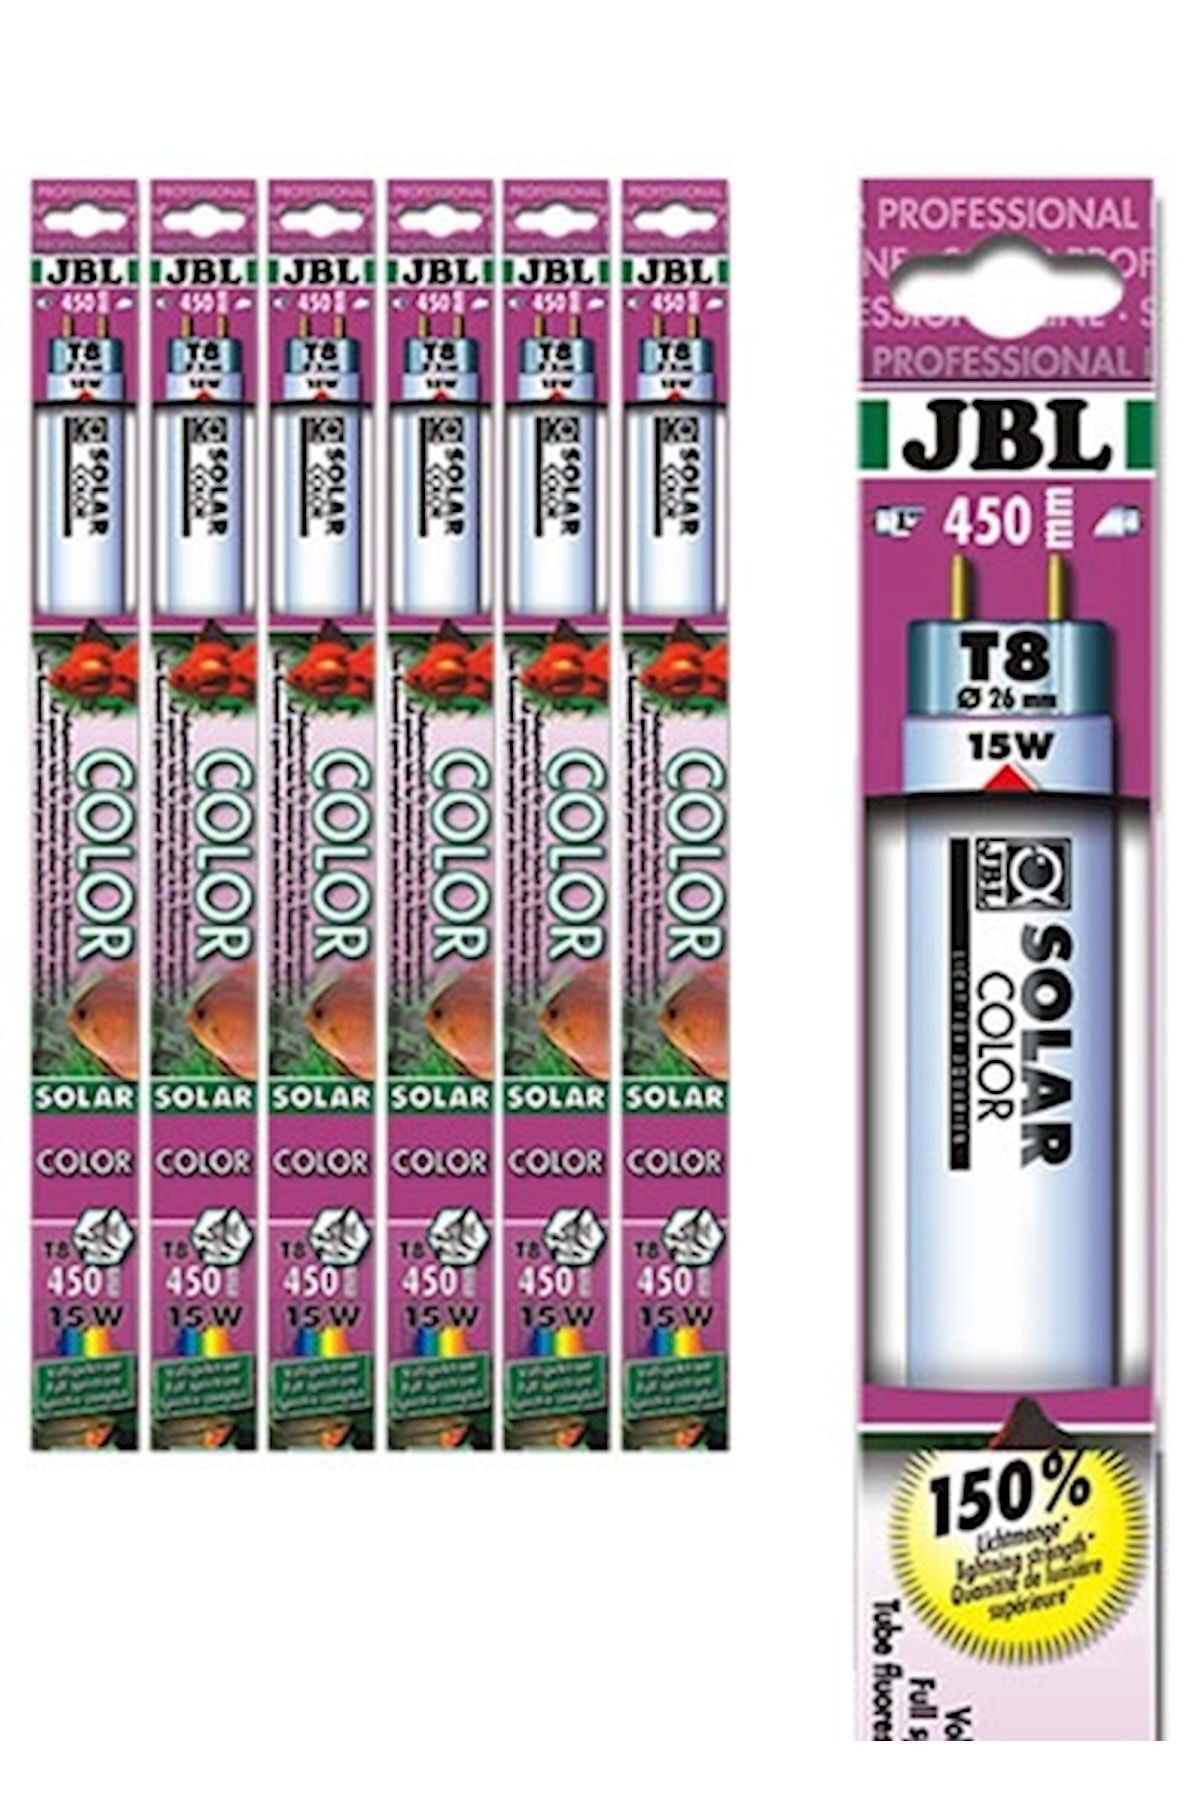 JBL Solar Color T8 36w-1200 Mm 9000k